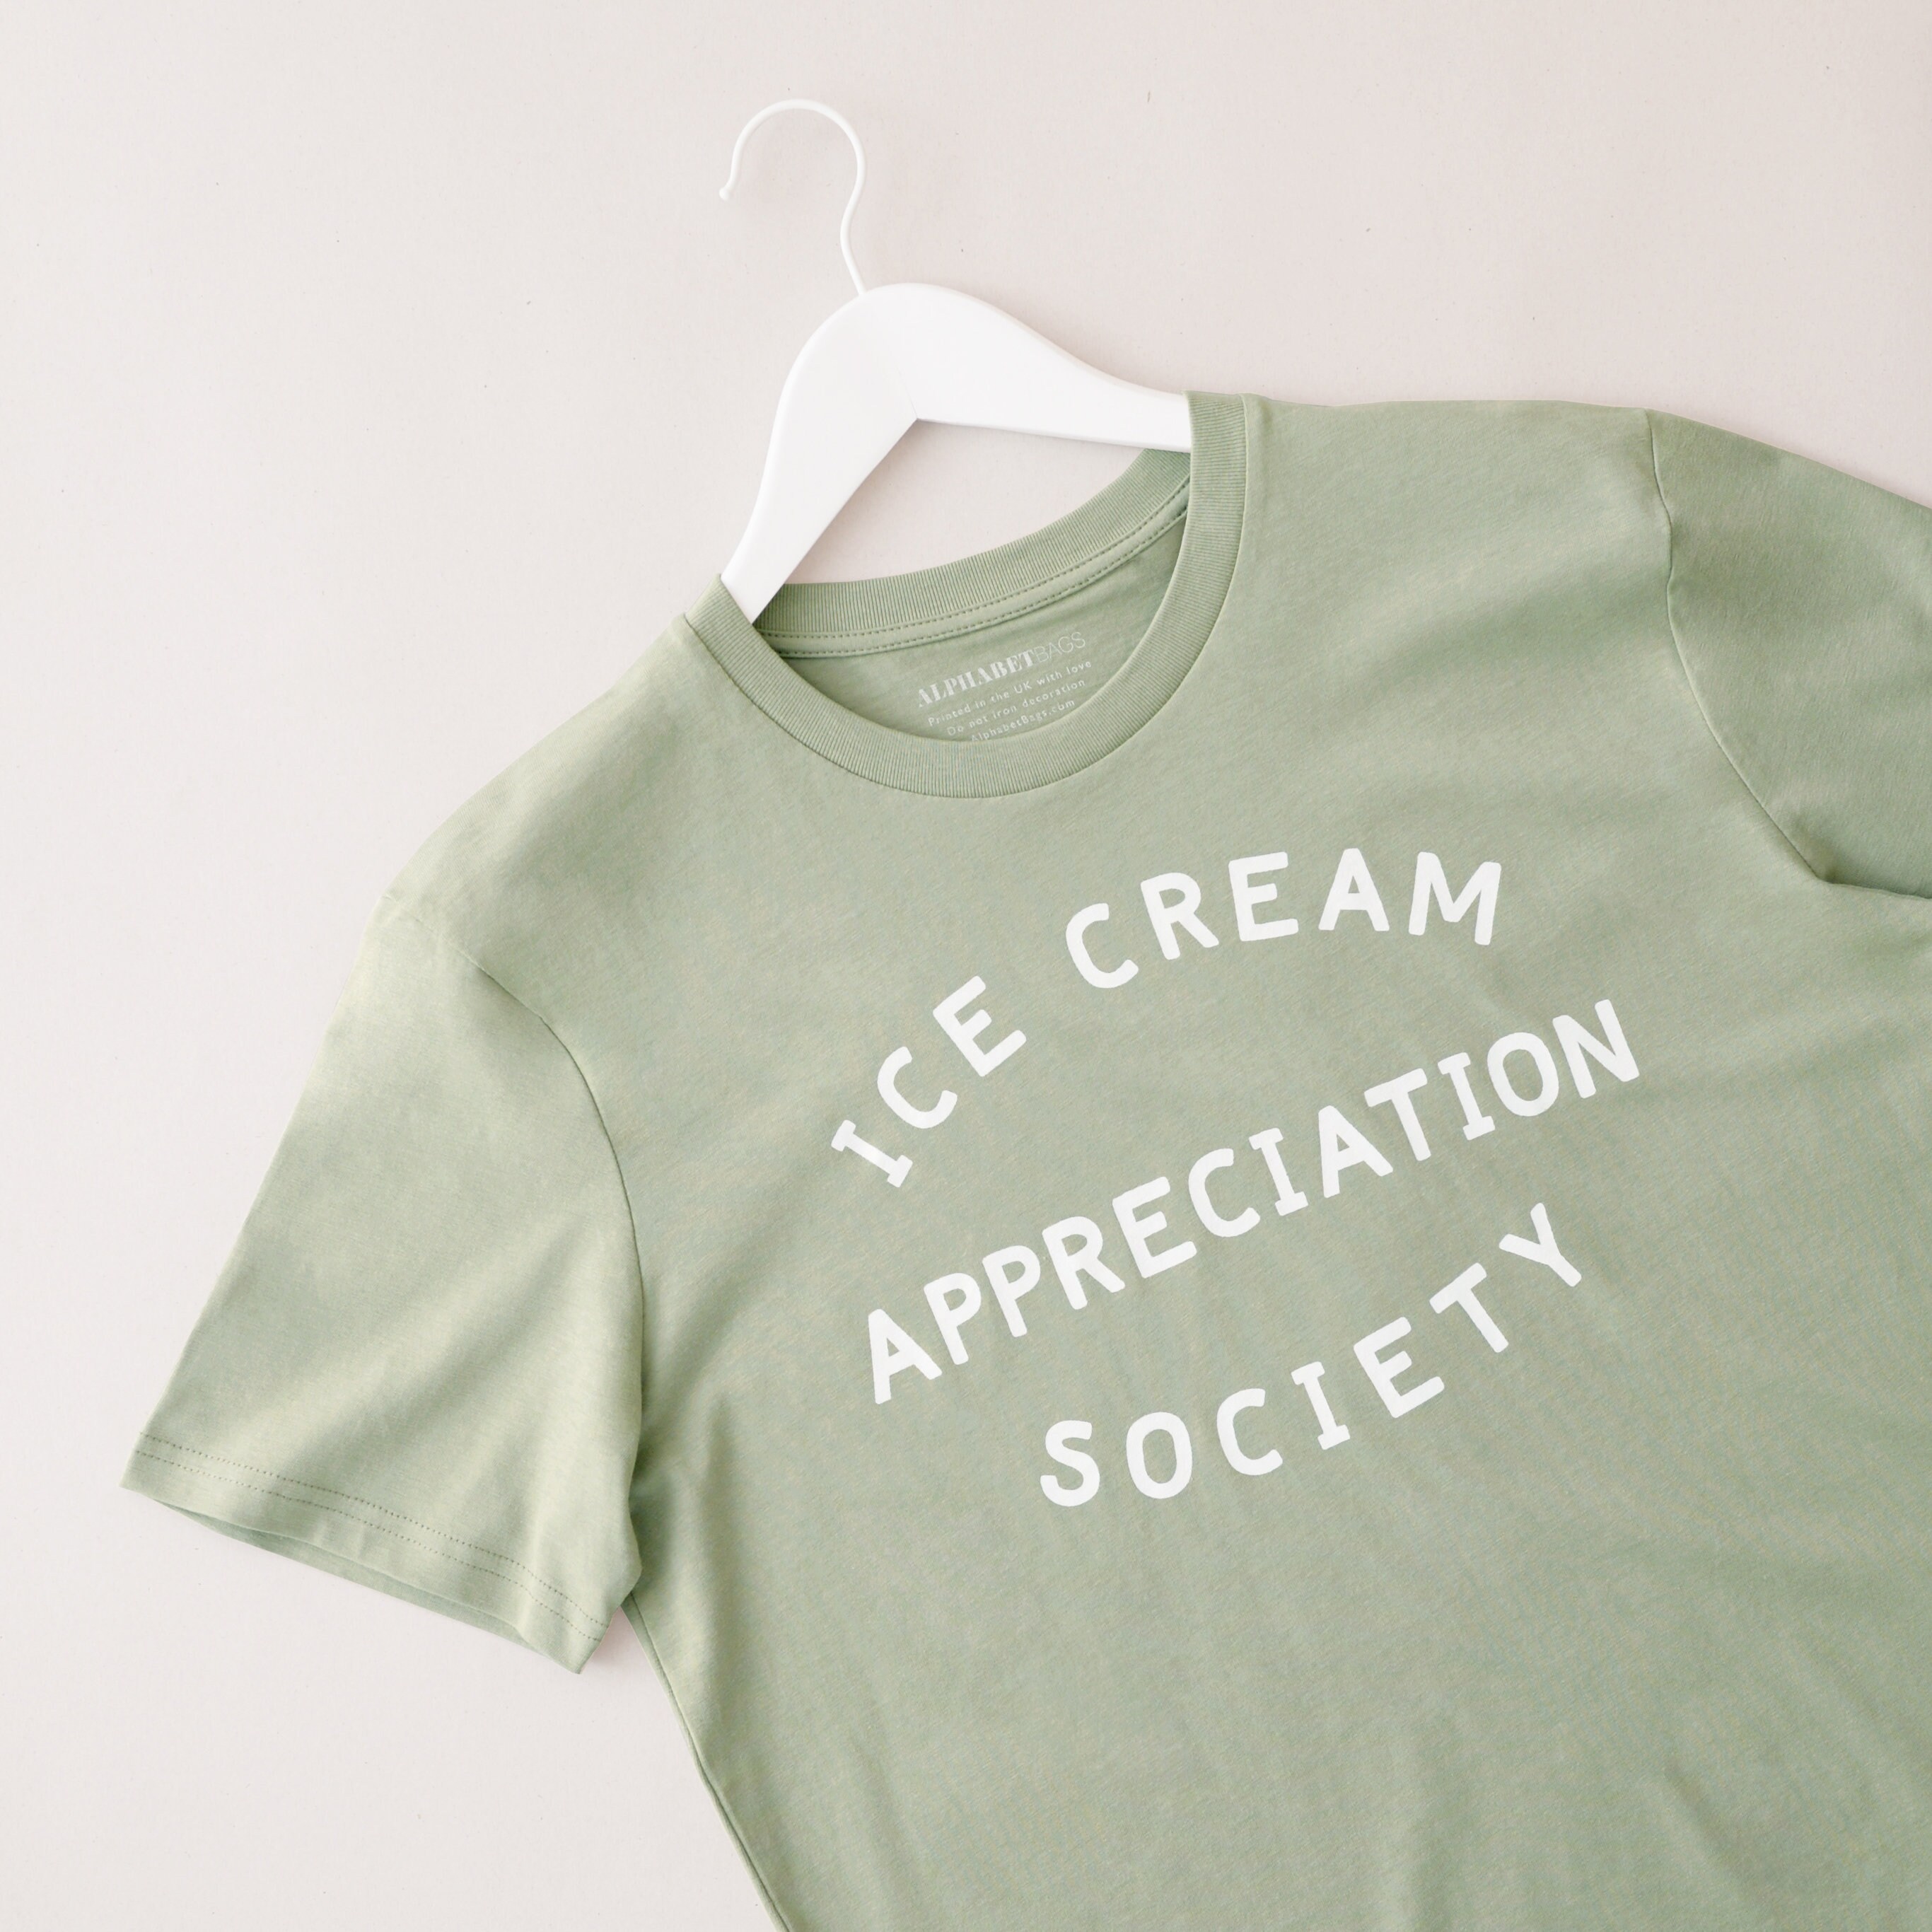 Ice cream shirt, Funny ice cream t-shirt - TeesHD - Custom T Shirt